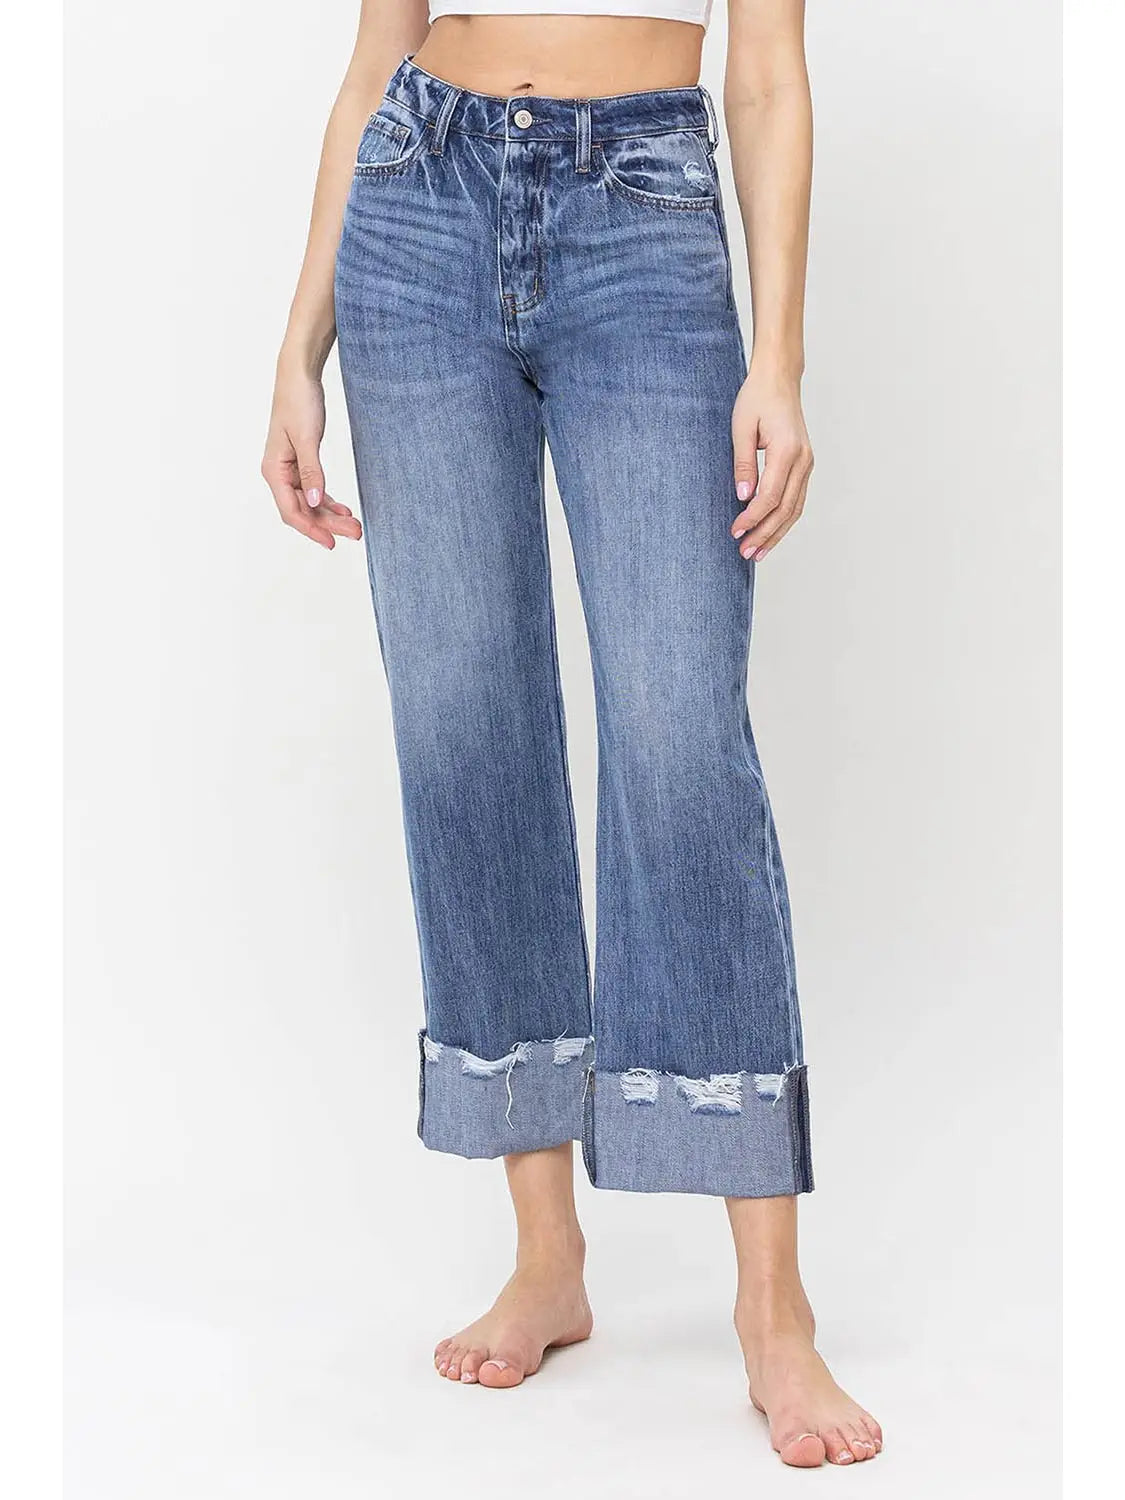 Vervet High Rise Rigid Dad Jeans-Bottoms-Deadwood South Boutique & Company-Deadwood South Boutique, Women's Fashion Boutique in Henderson, TX